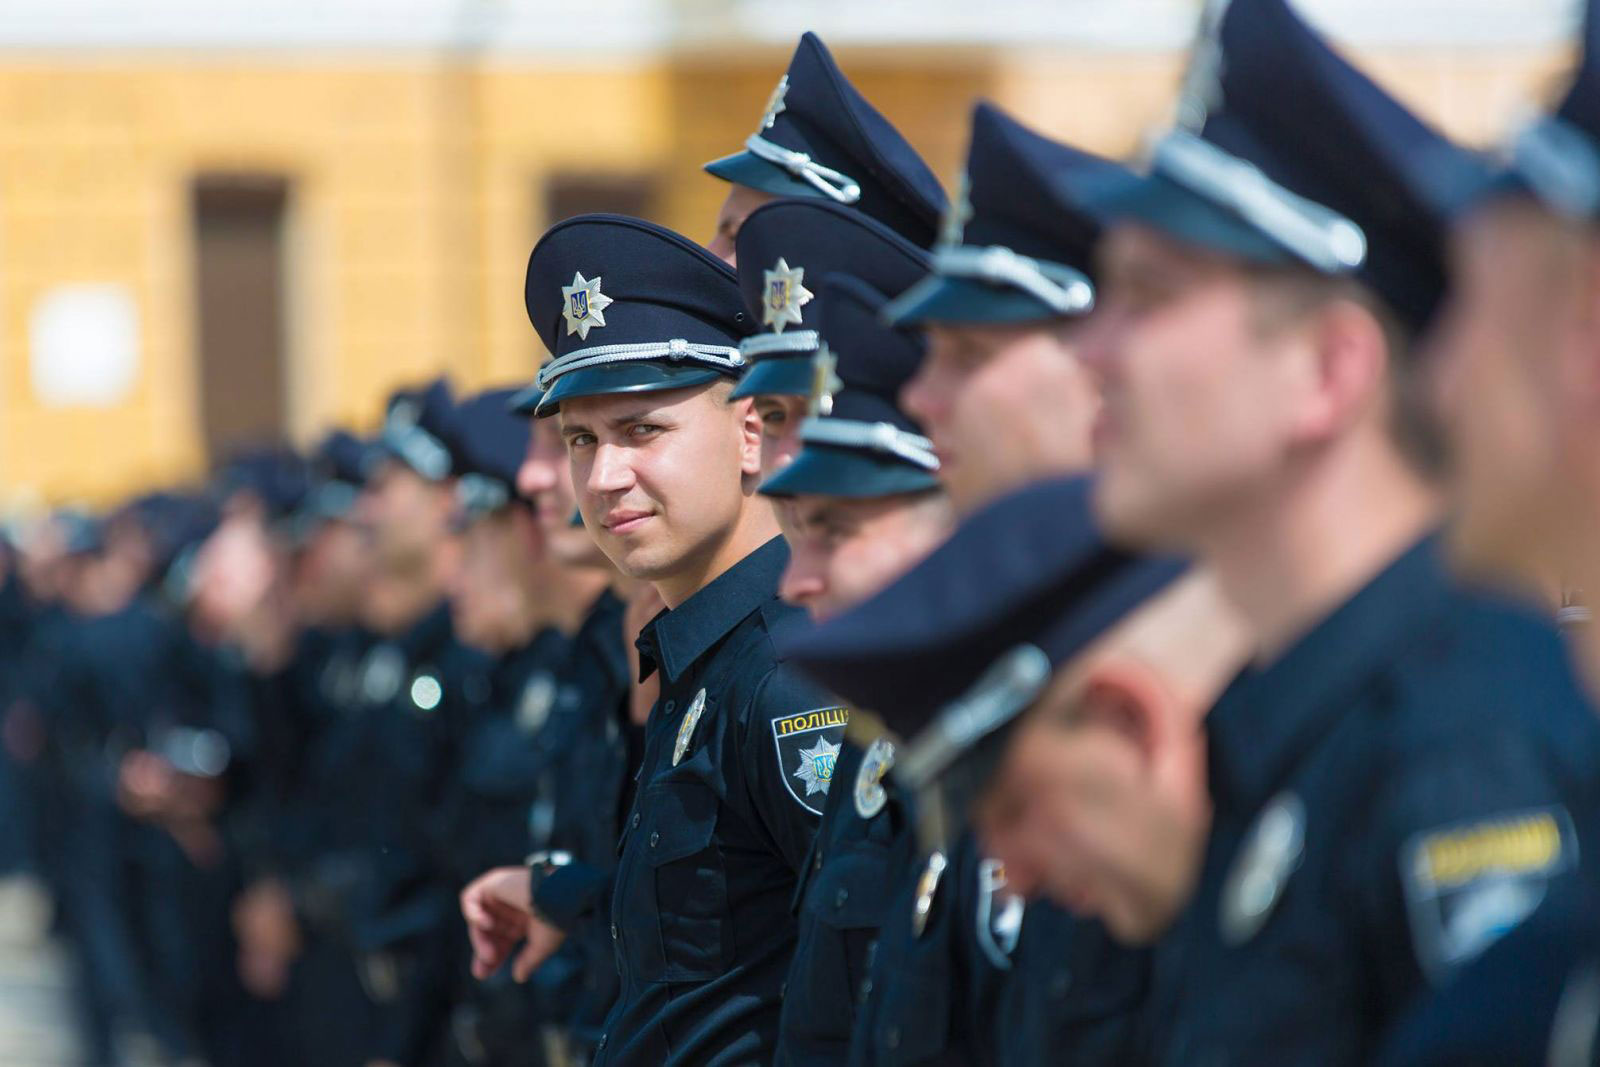 На Великодні свята поліція працюватиме в посиленому режимі